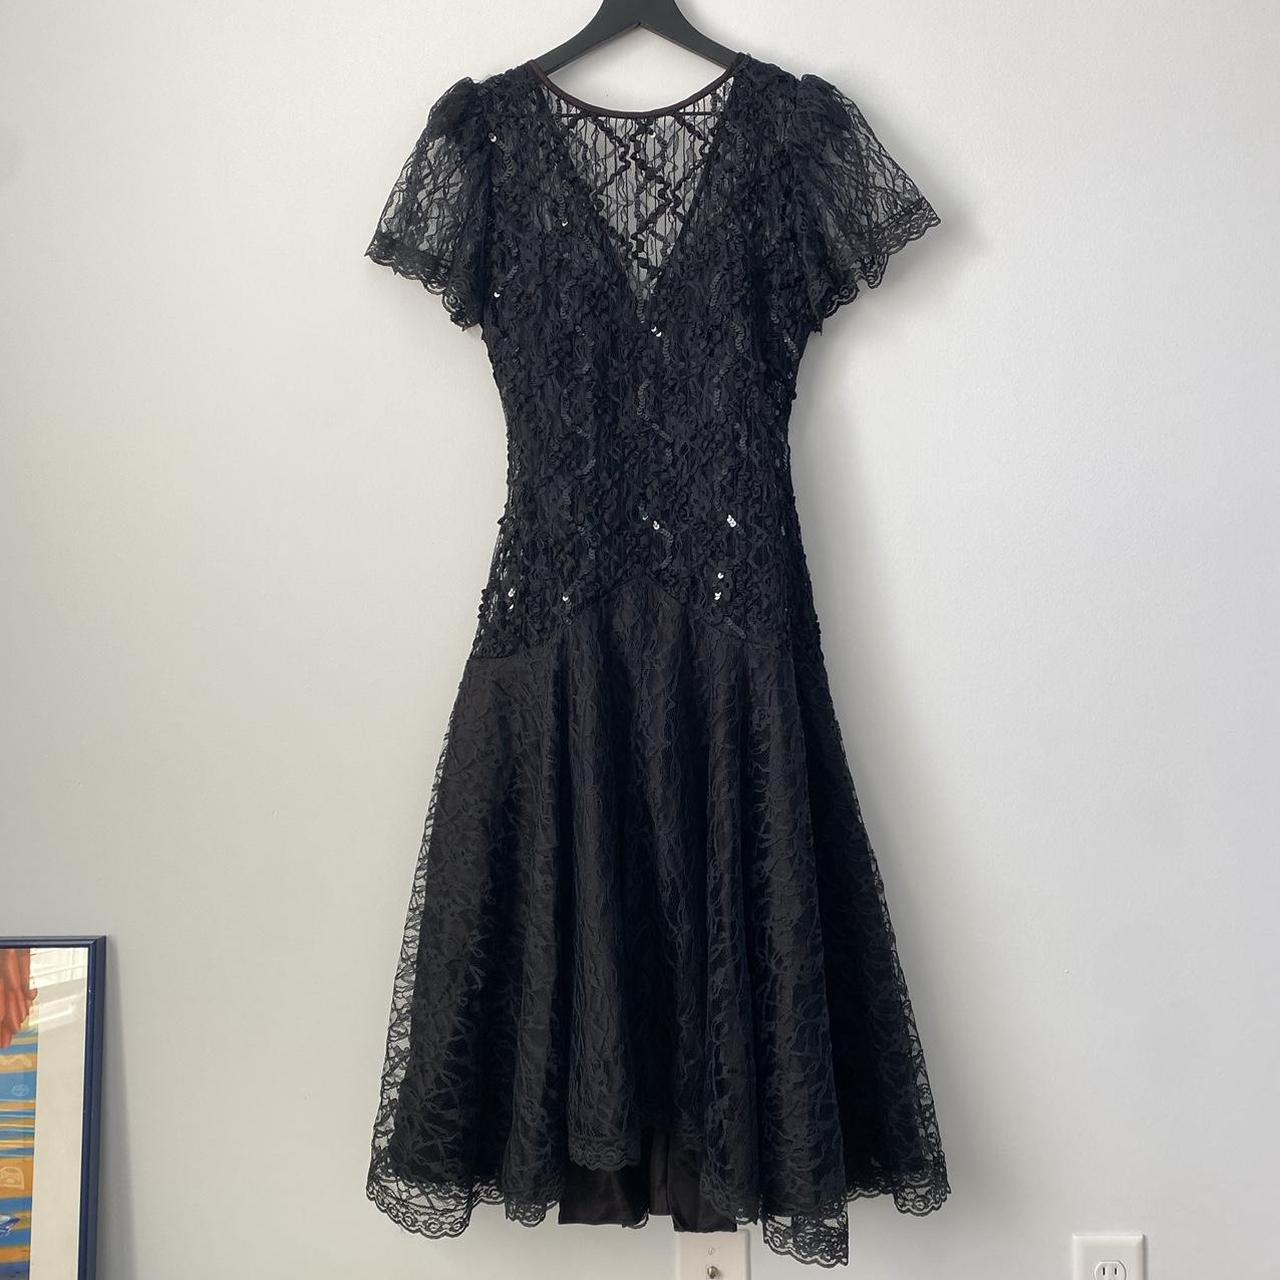 Vintage black lace gown Dropped waist. Black... - Depop